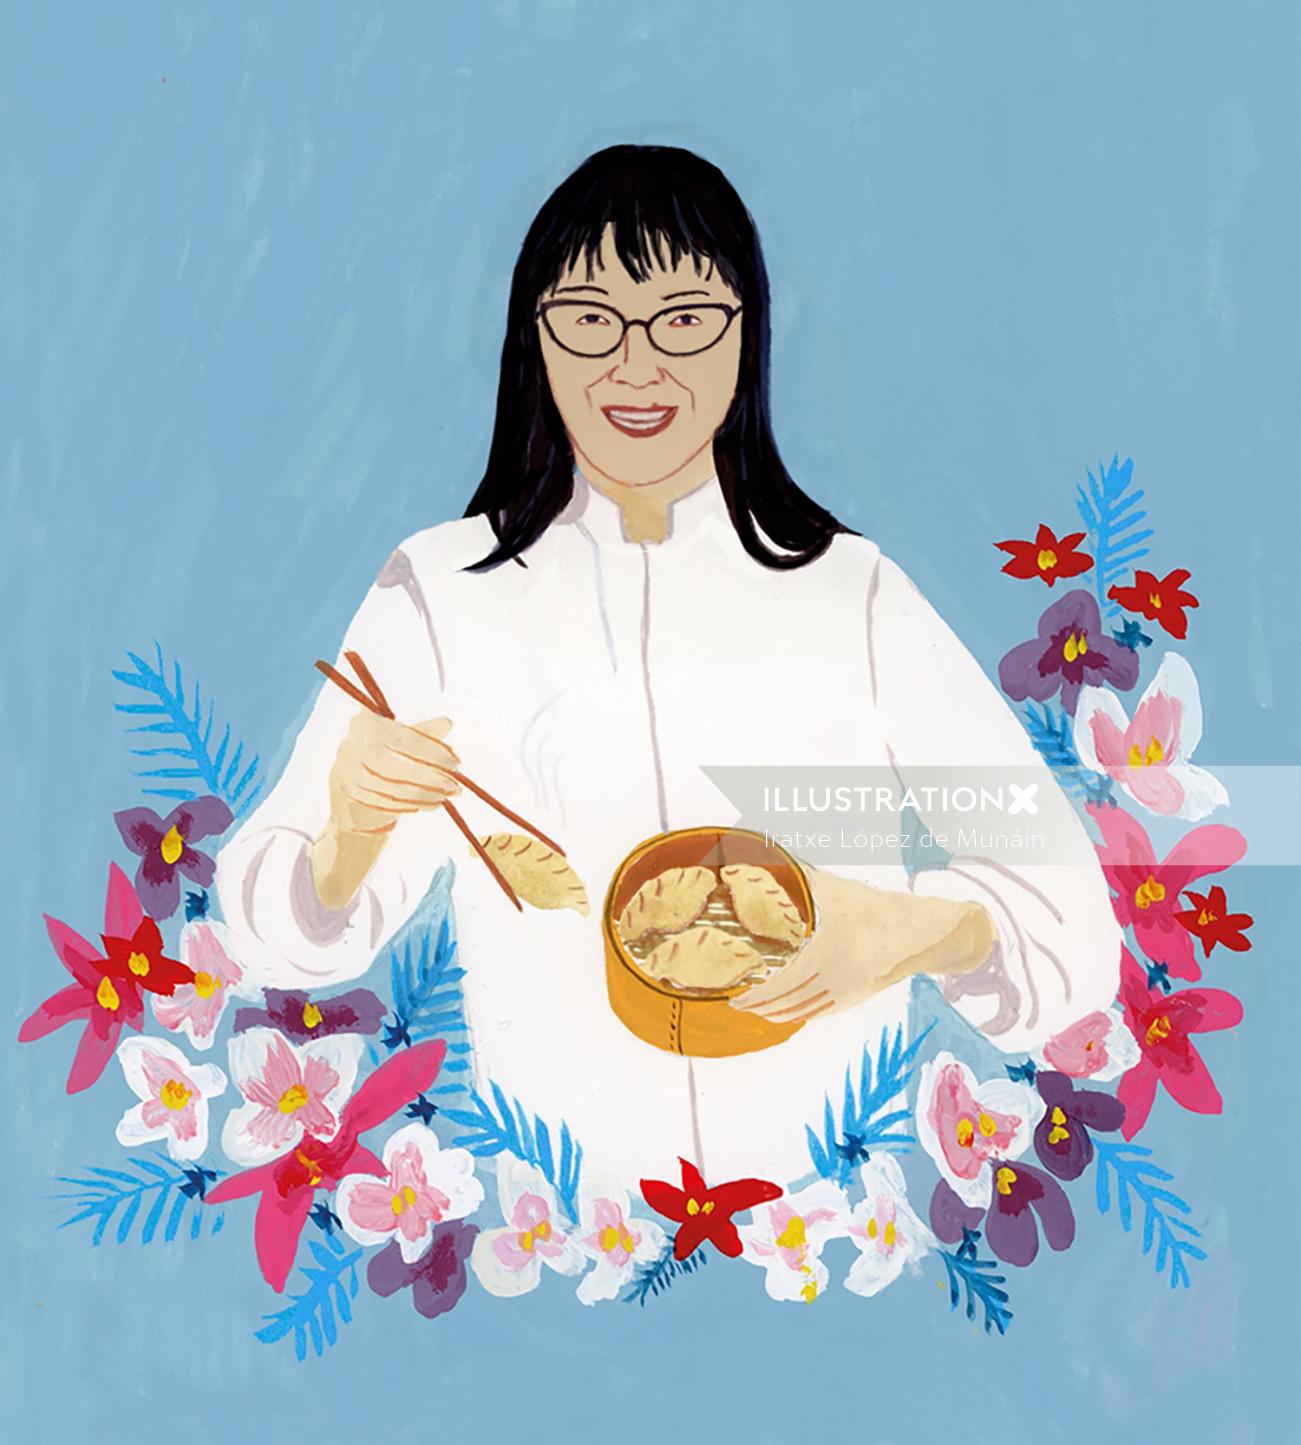 アジア人、アジア料理、食べ物、肖像画、アジア人女性、シェフ、